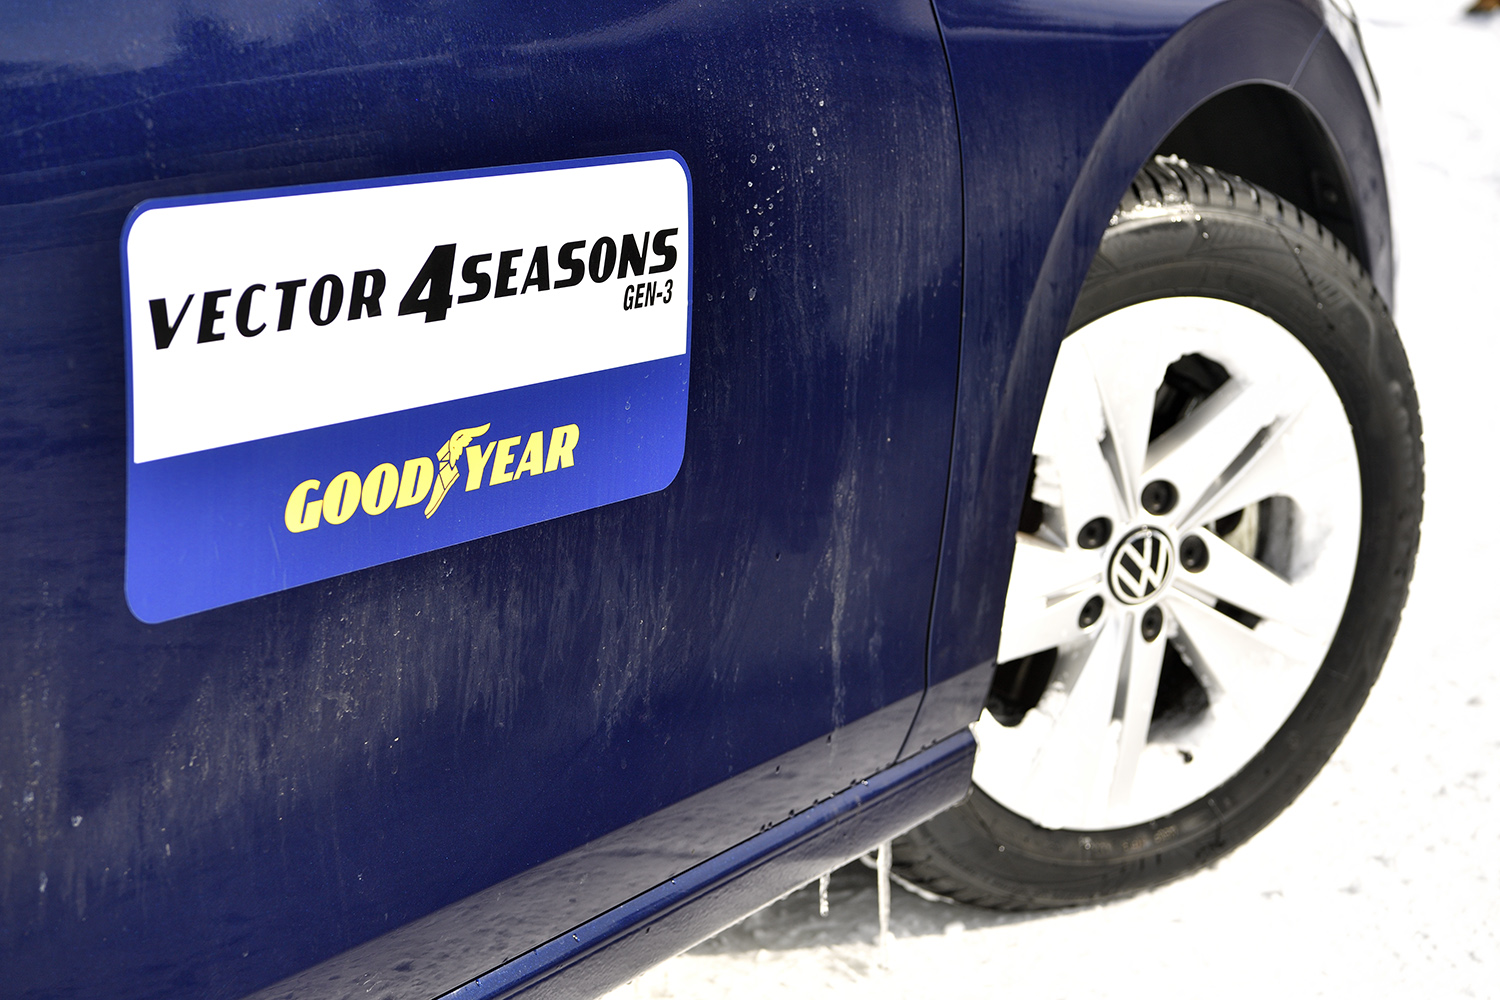 グッドイヤーのオールシーズンタイヤ「ベクター4シーズンGen3」がこの冬注目の１本だった 〜 画像30